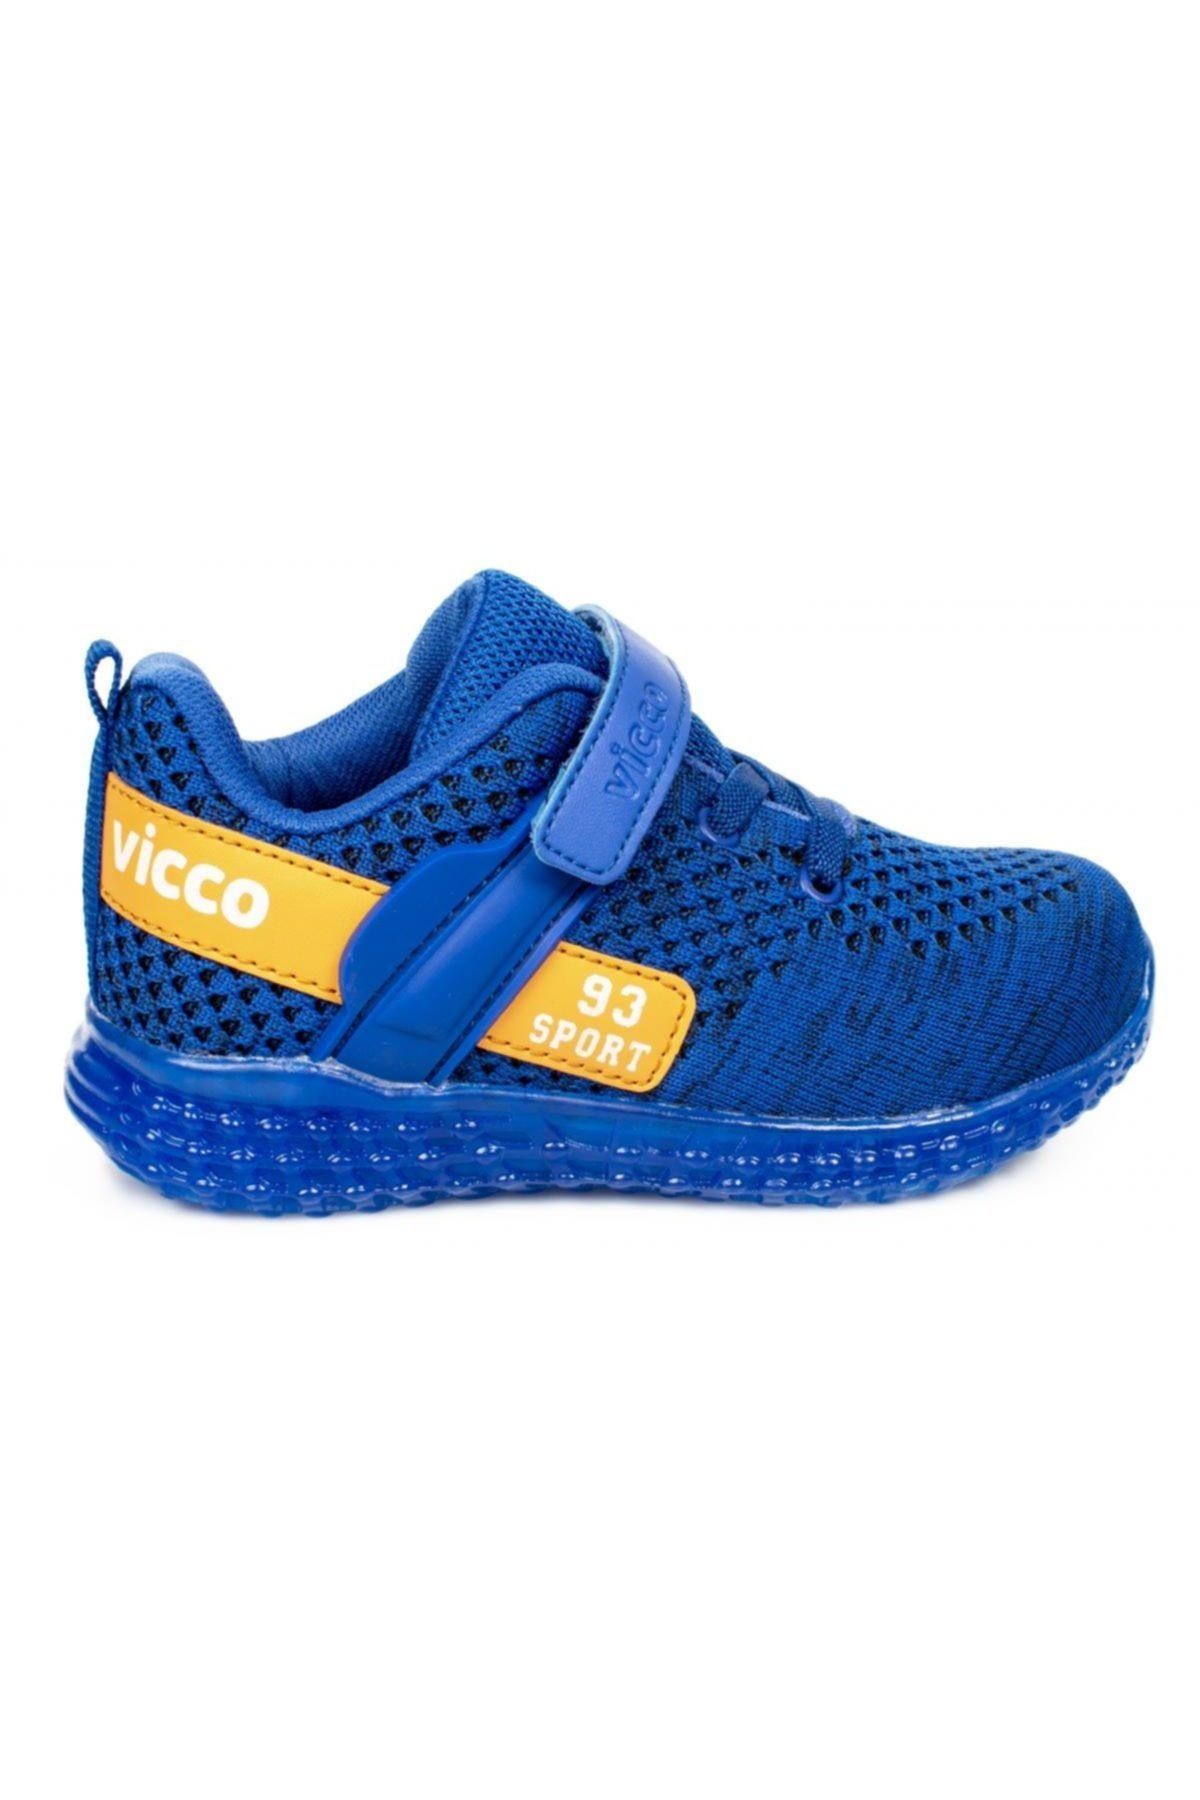 Vicco Unisex Çocuk Mavi Patik Işıklı Spor Ayakkabı 313.p20y.104